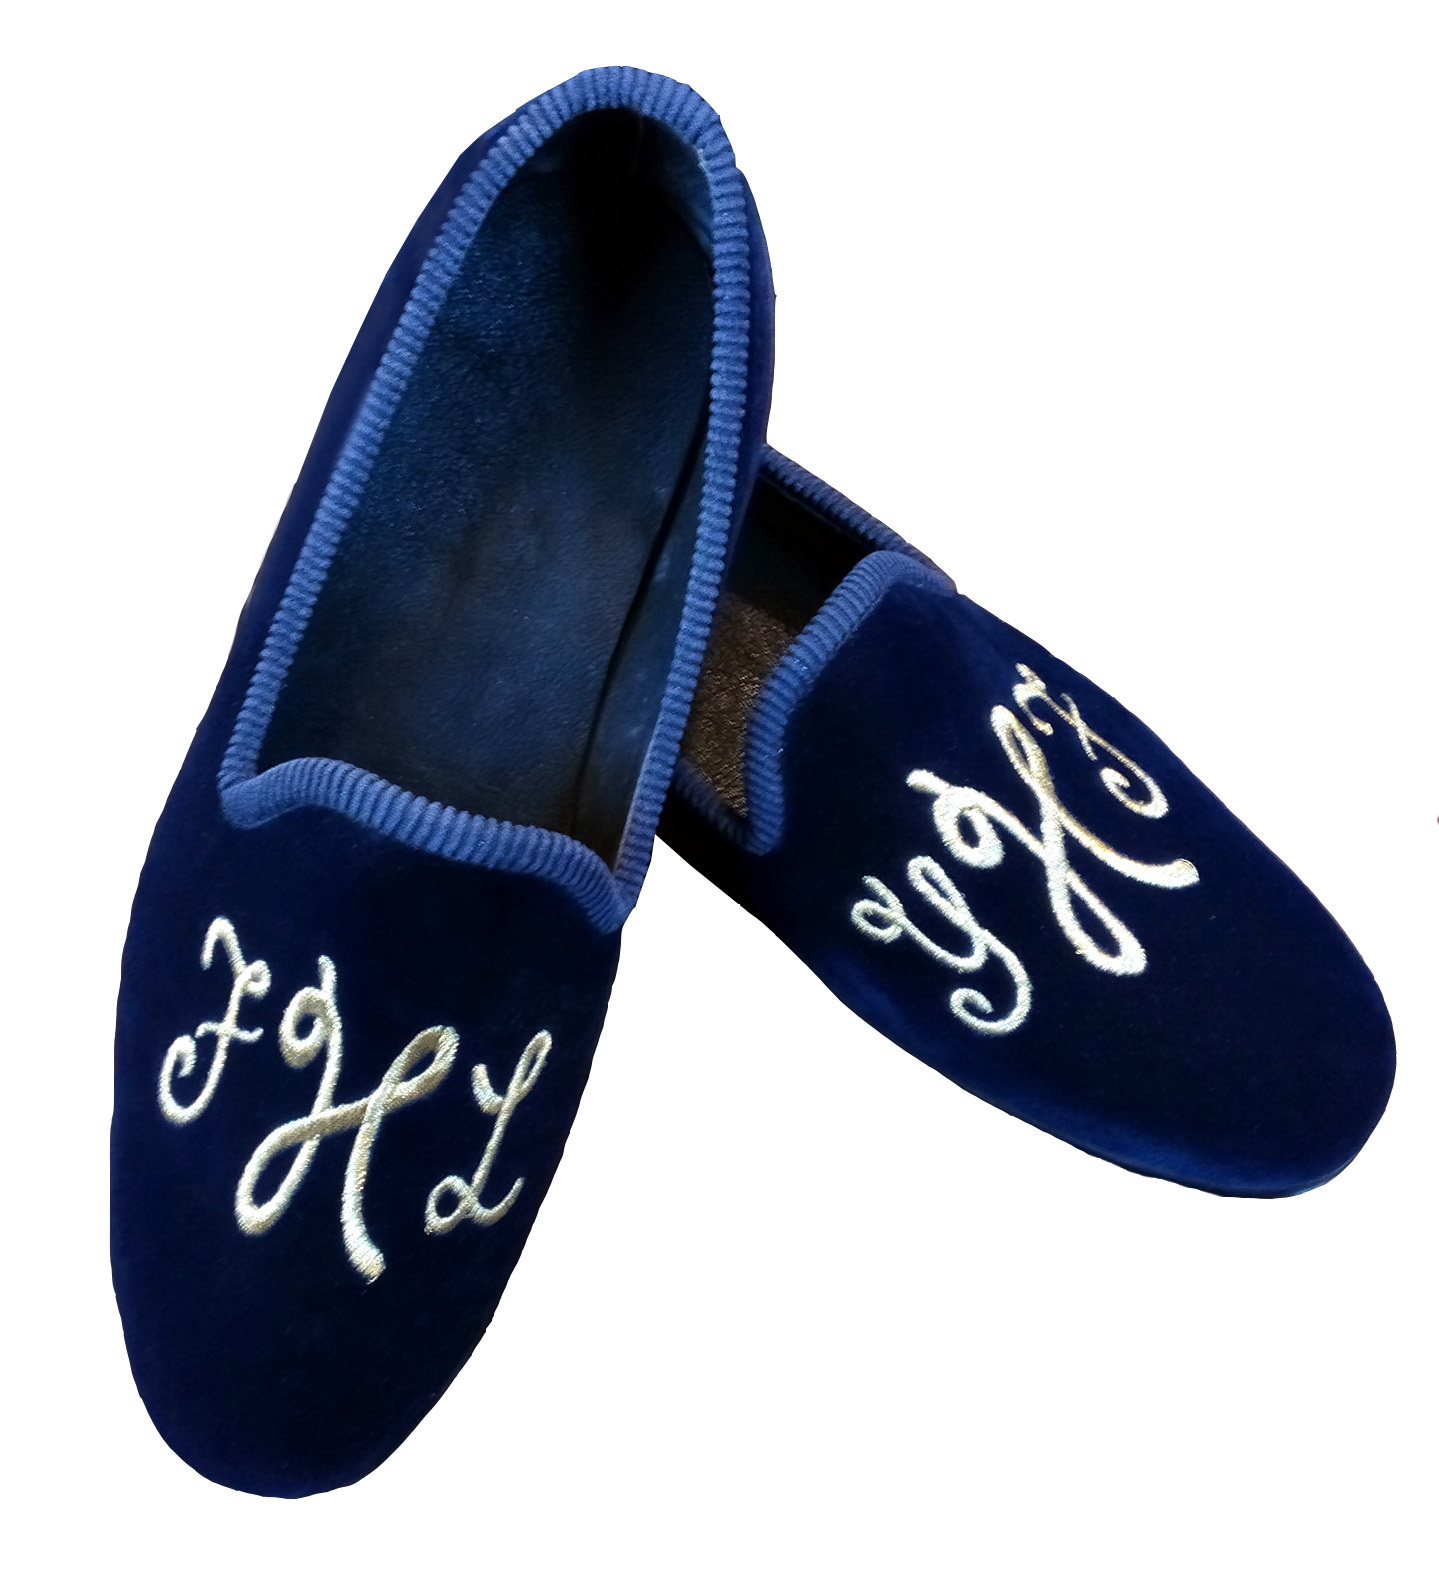 NEW  Handmade Men Blue Shoes, Velvet Moccasin Loafer Slip on Shoes, Men Fashion